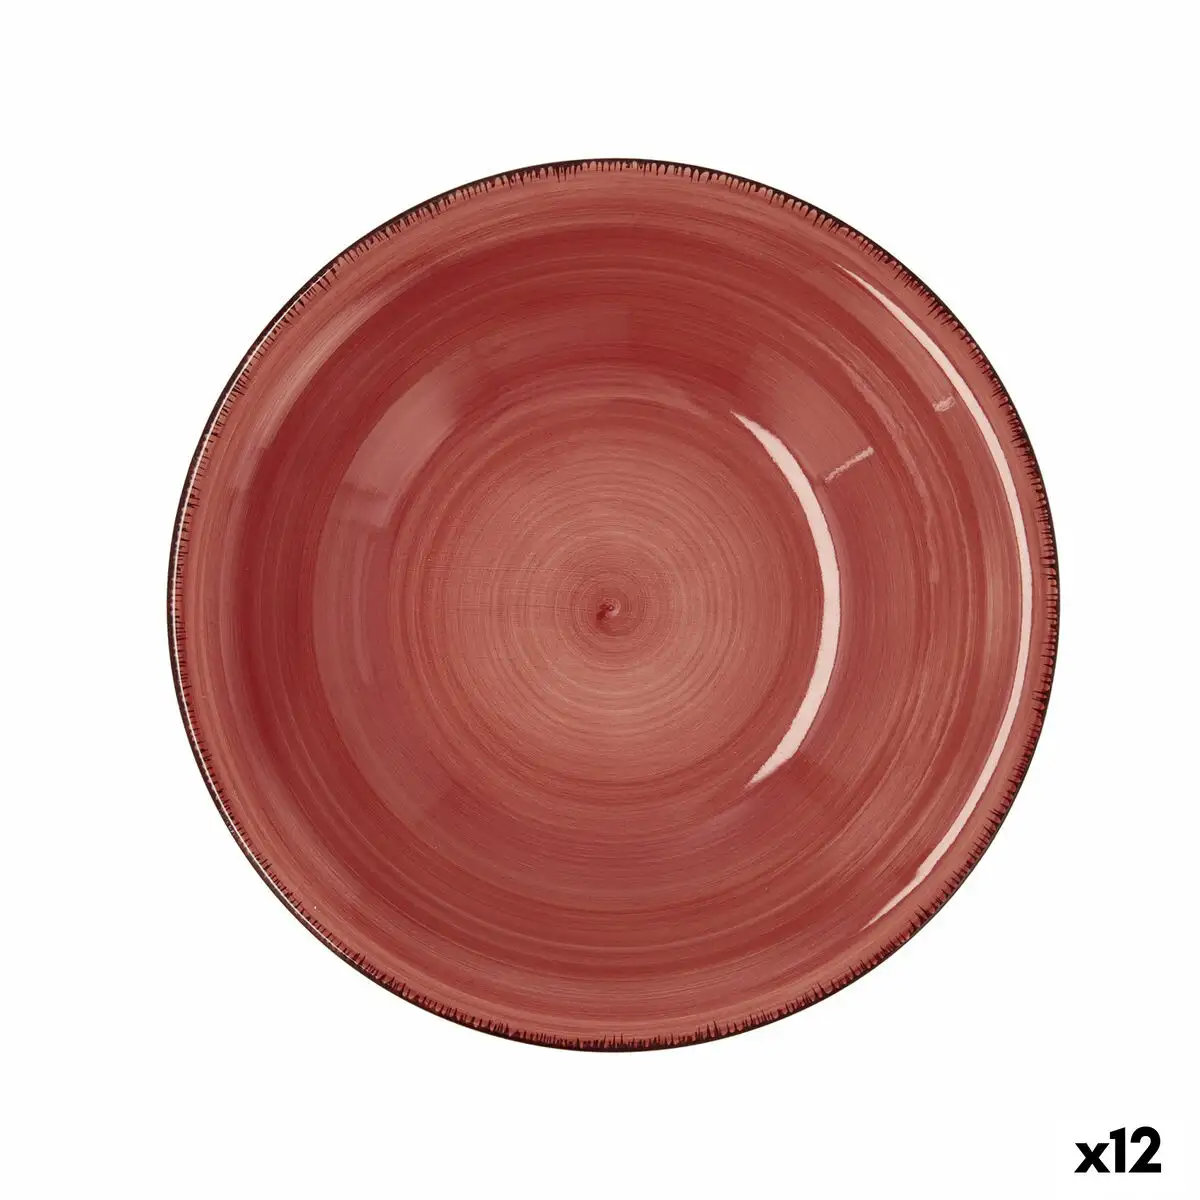 Assiette creuse quid vita ceramique rouge o 21 5 cm 12 unites _8630. DIAYTAR SENEGAL - Votre Portail Vers l'Exclusivité. Explorez notre boutique en ligne pour trouver des produits uniques et exclusifs, conçus pour les amateurs de qualité.